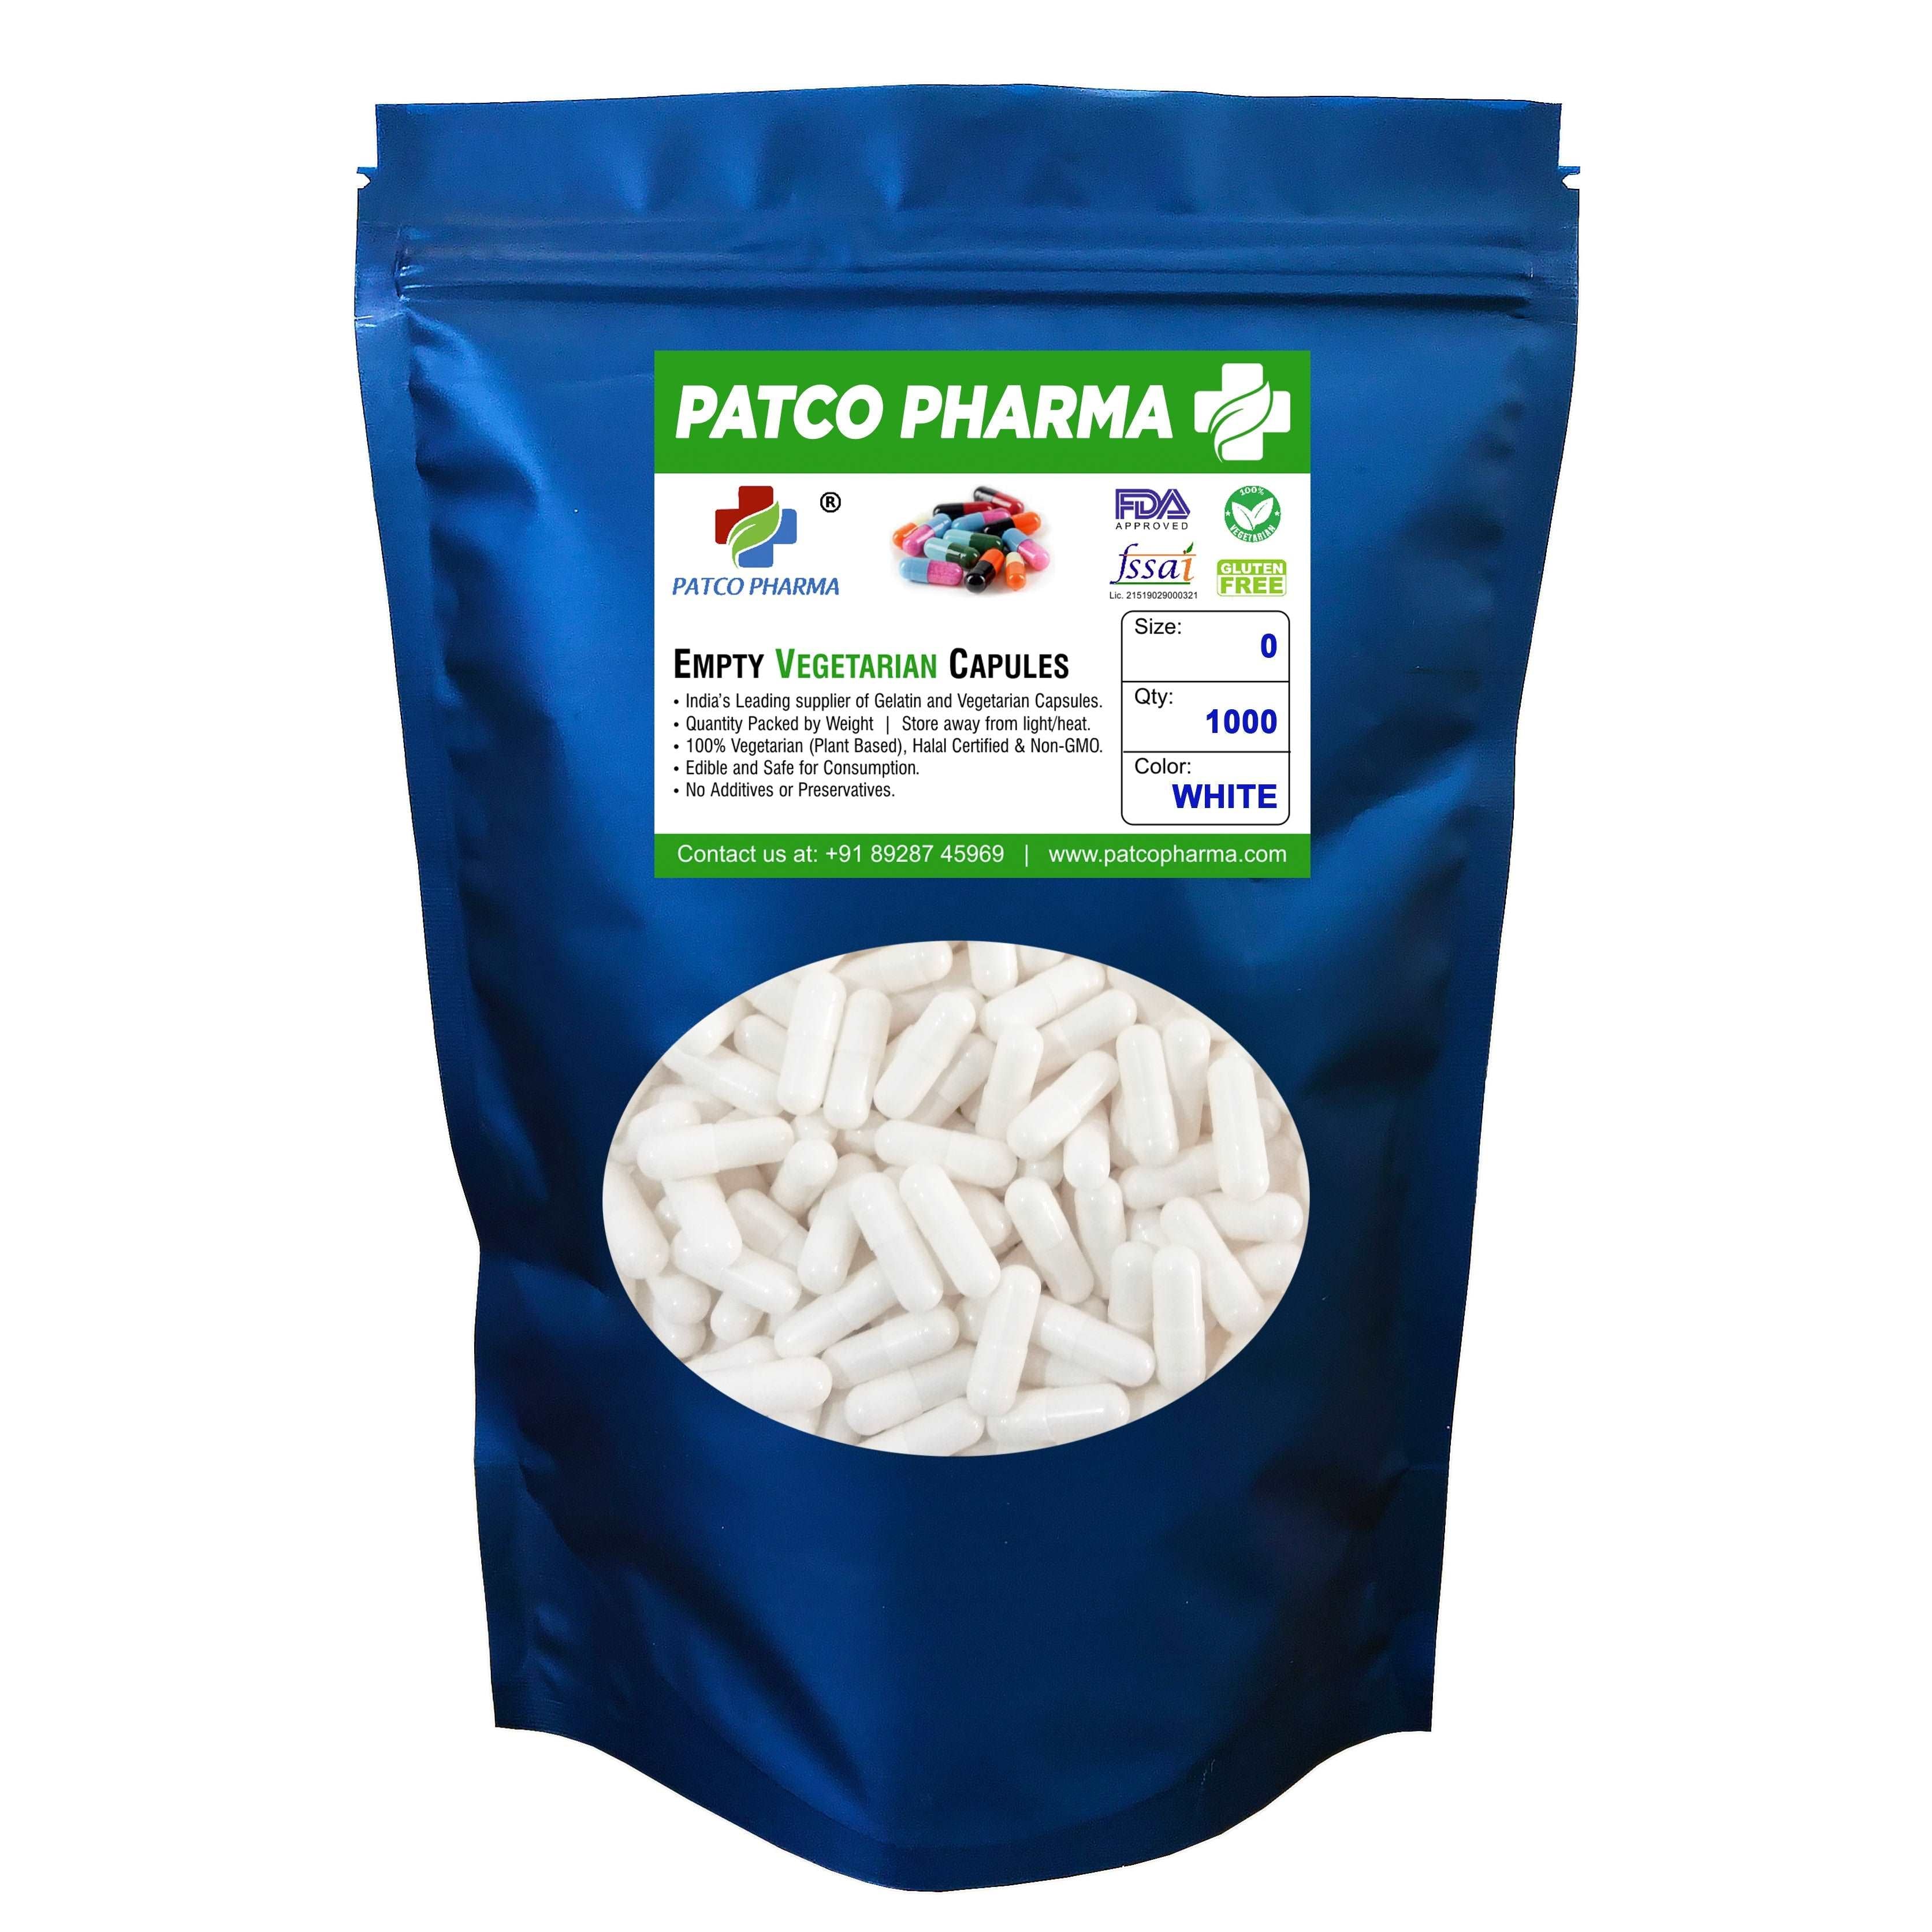 Size 0 White Empty Vegatarian Capsule, Patco Pharma, HPMC capsules, size-0-white-empty-vegetarian-capsule, "500 mg capsule, Size 0 Capsule, Vegetarian capsule, White Capsule", Patco Pharma